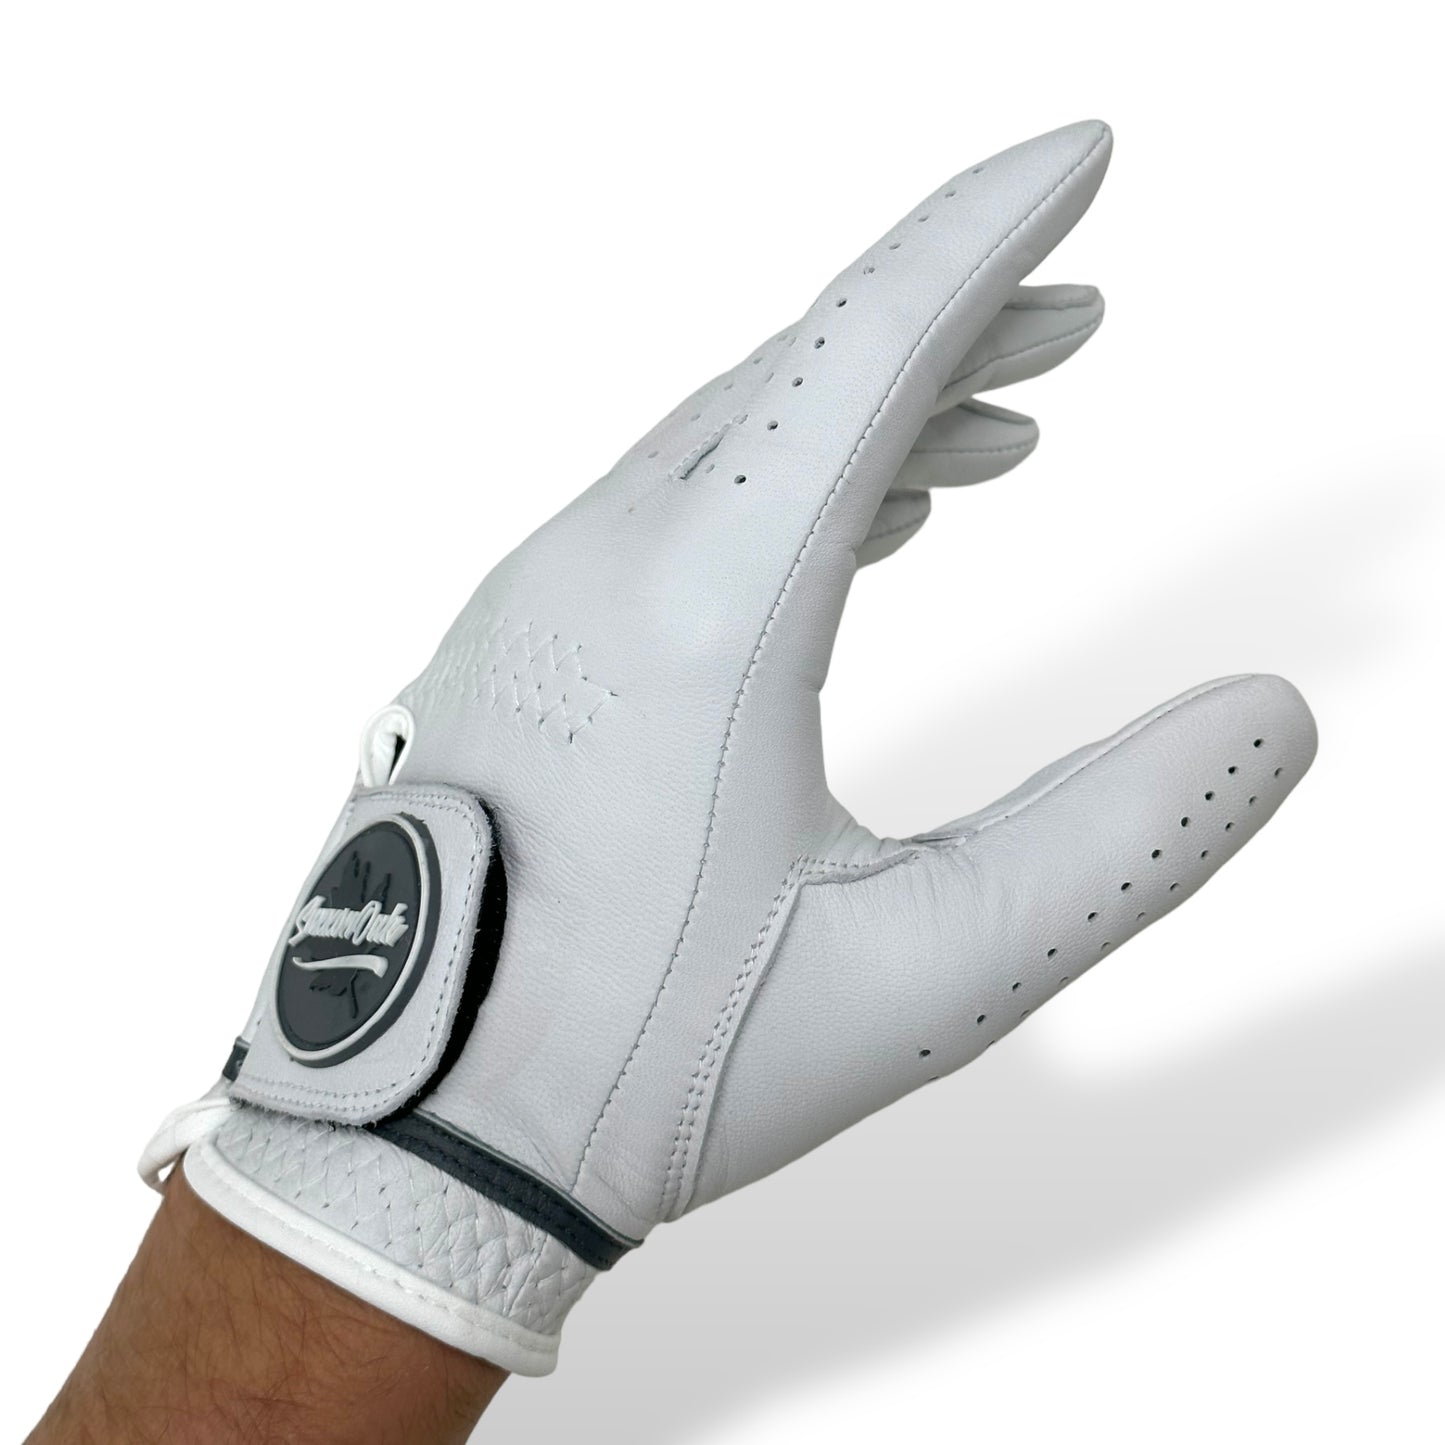 Cabretta Leather Golf Glove - Glacier